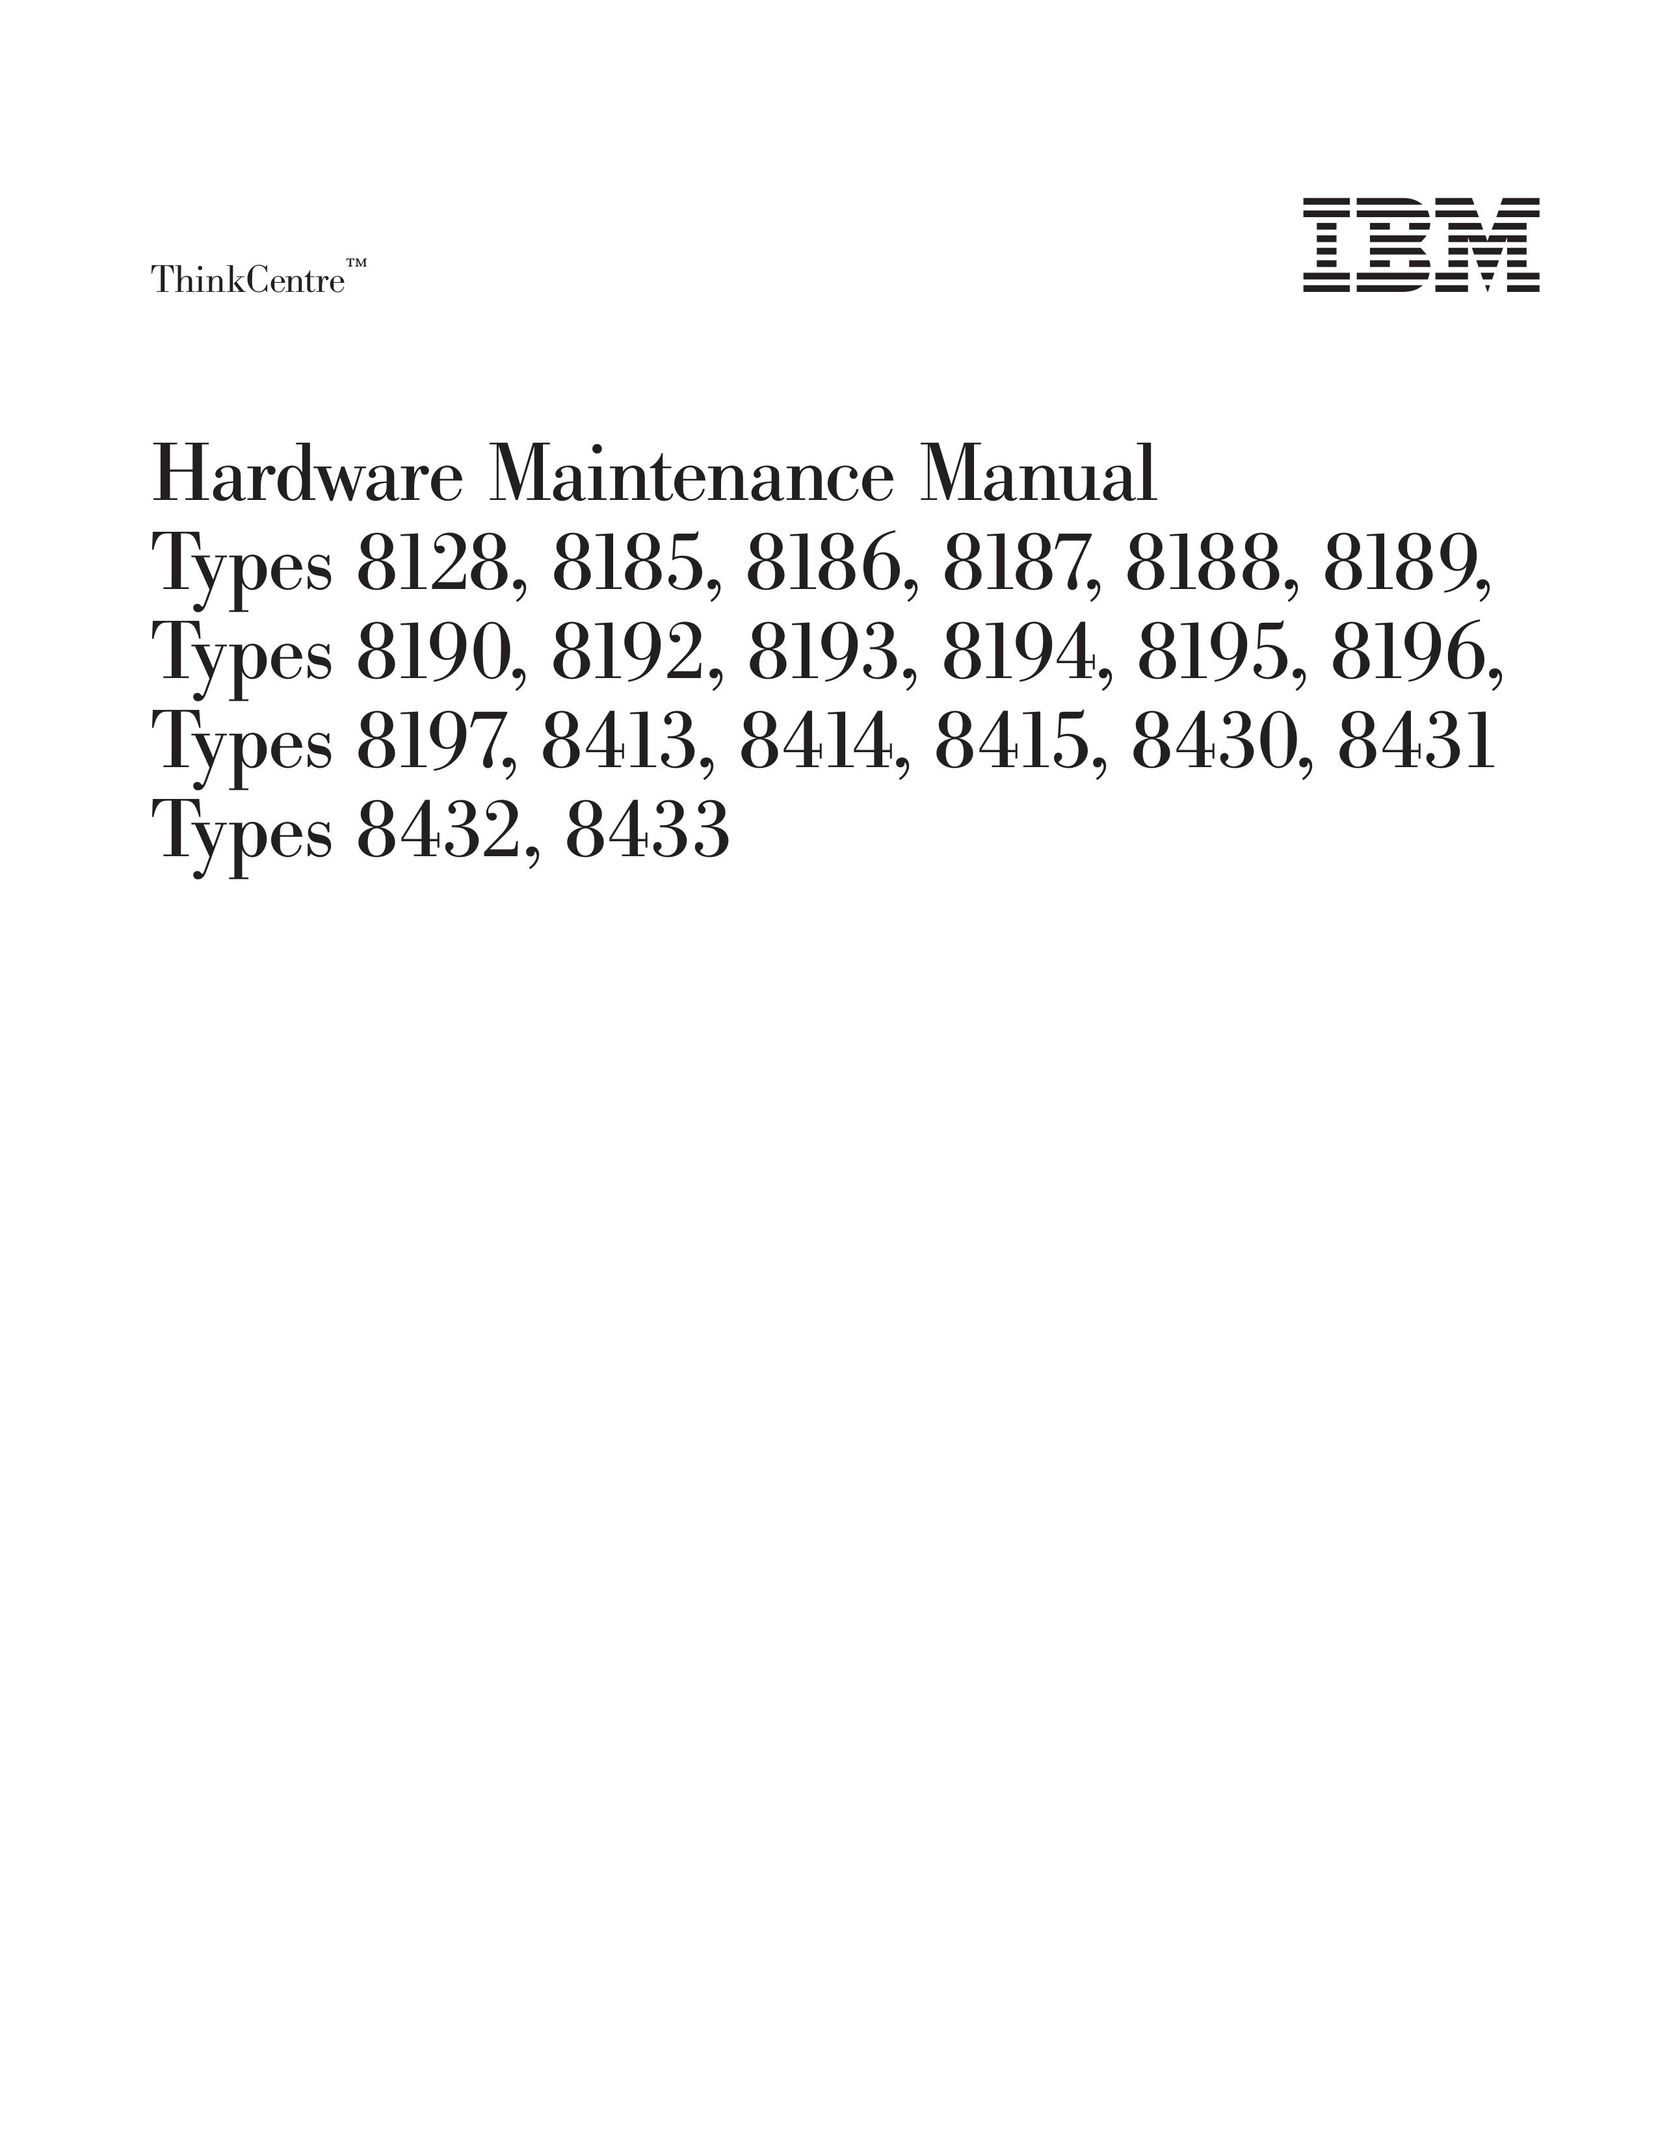 IBM 8190 Computer Hardware User Manual